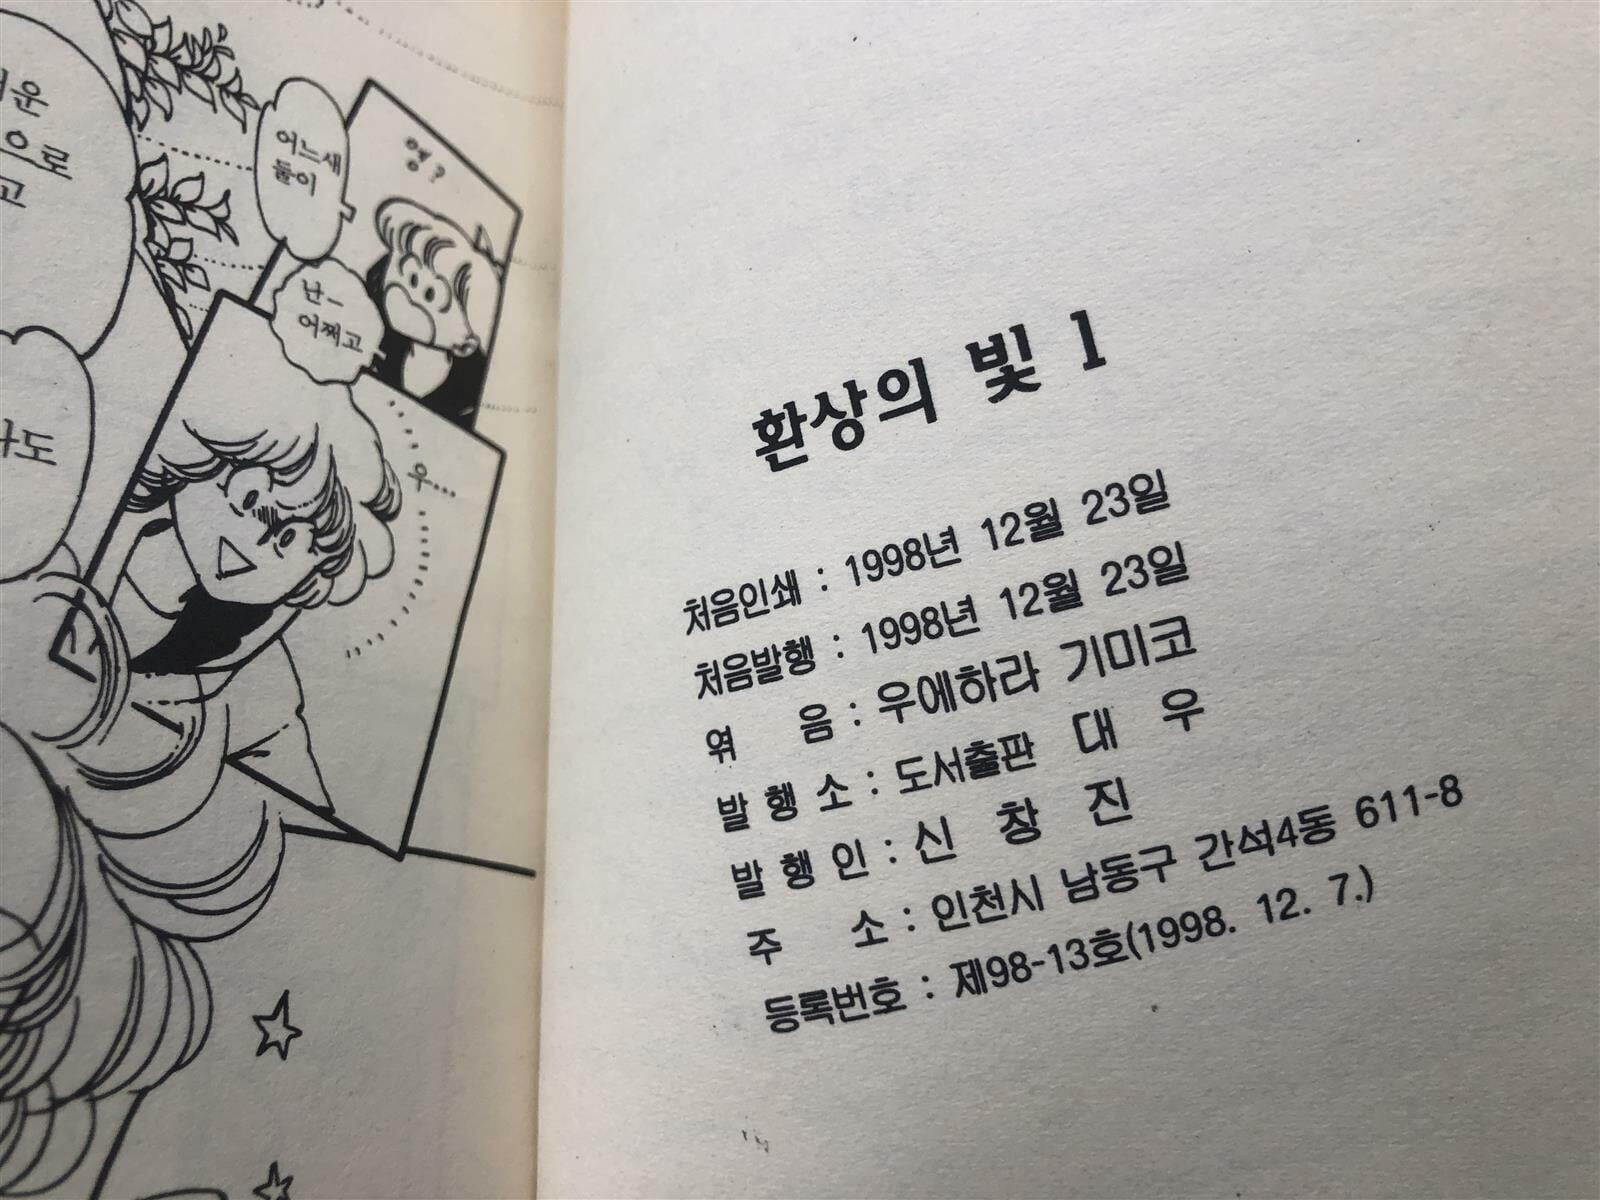 환상의 빛 1-6 완결 (희귀도서) 1998년 발행 / 우에하라 기미코